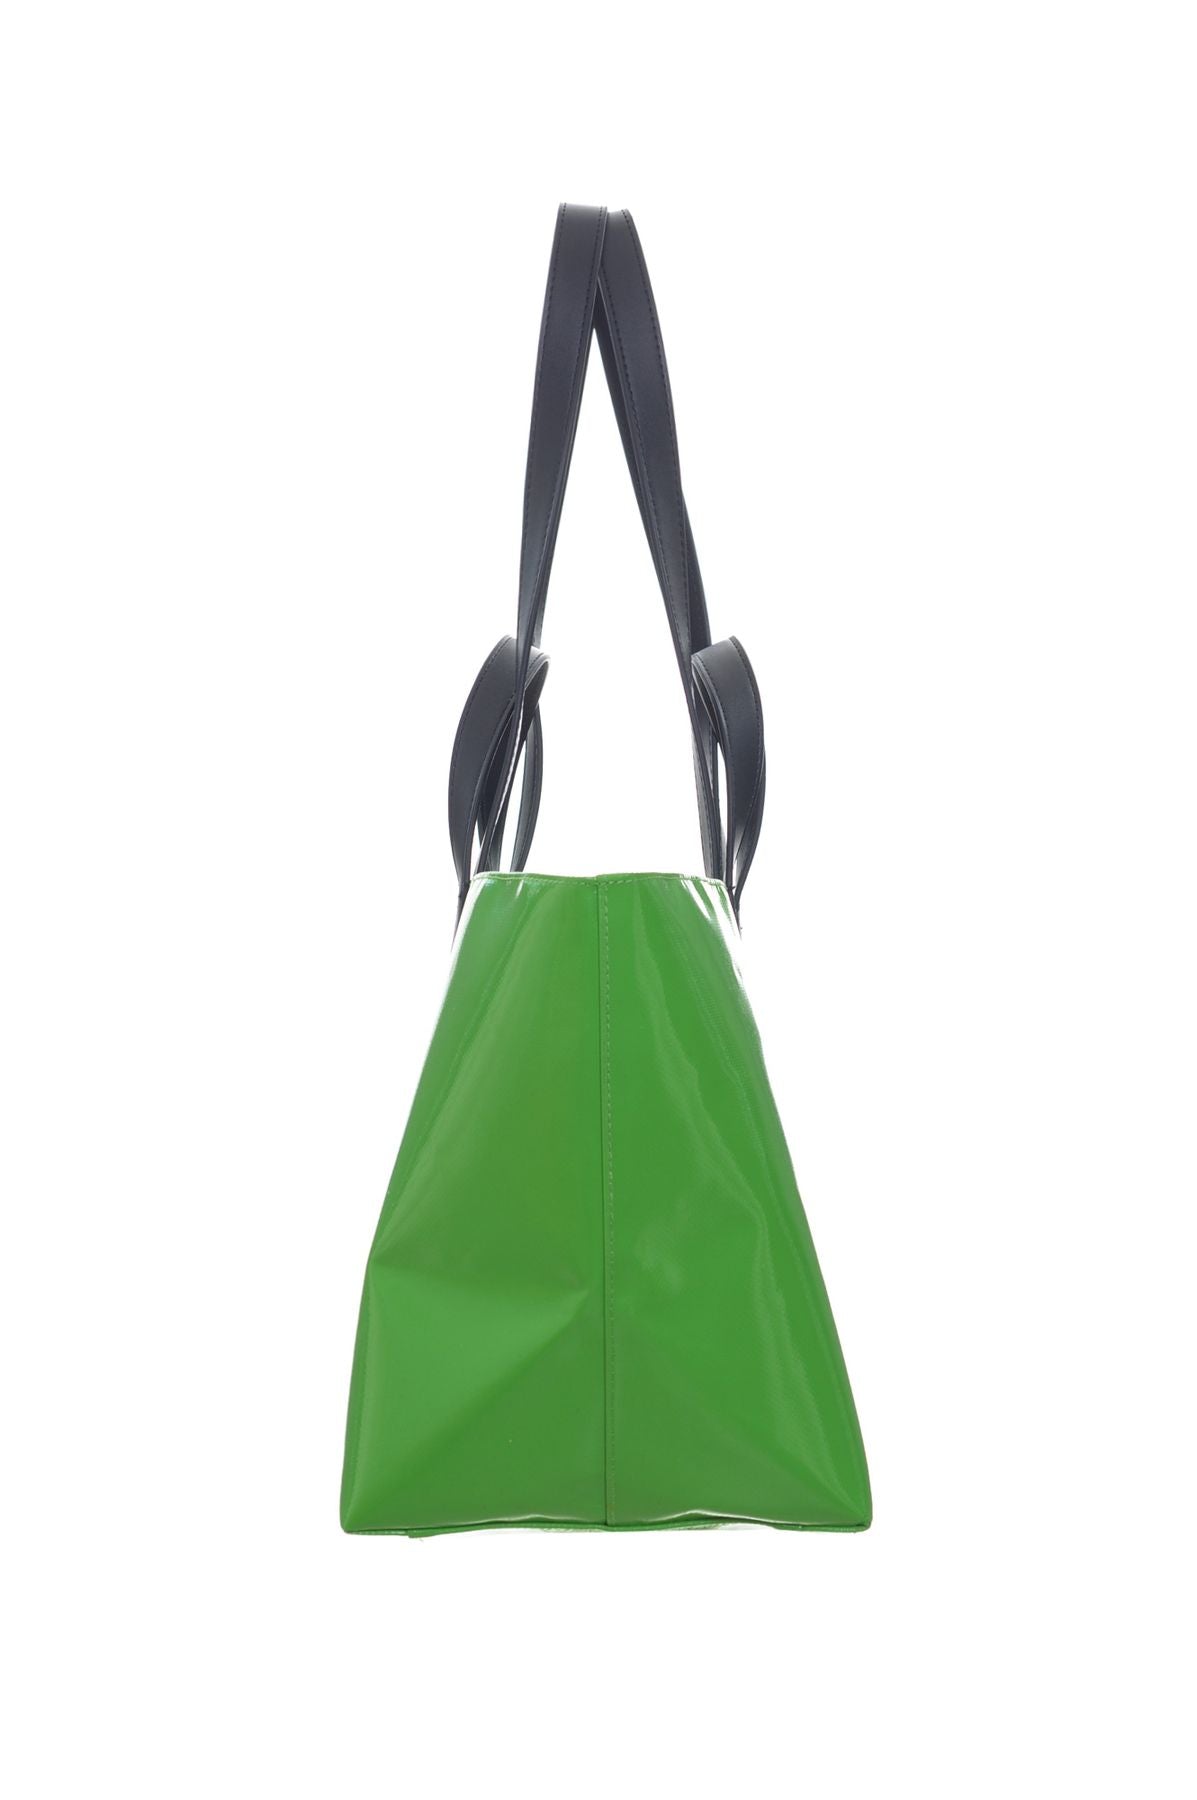 SUNDEK Spring/Summer PVC Bags